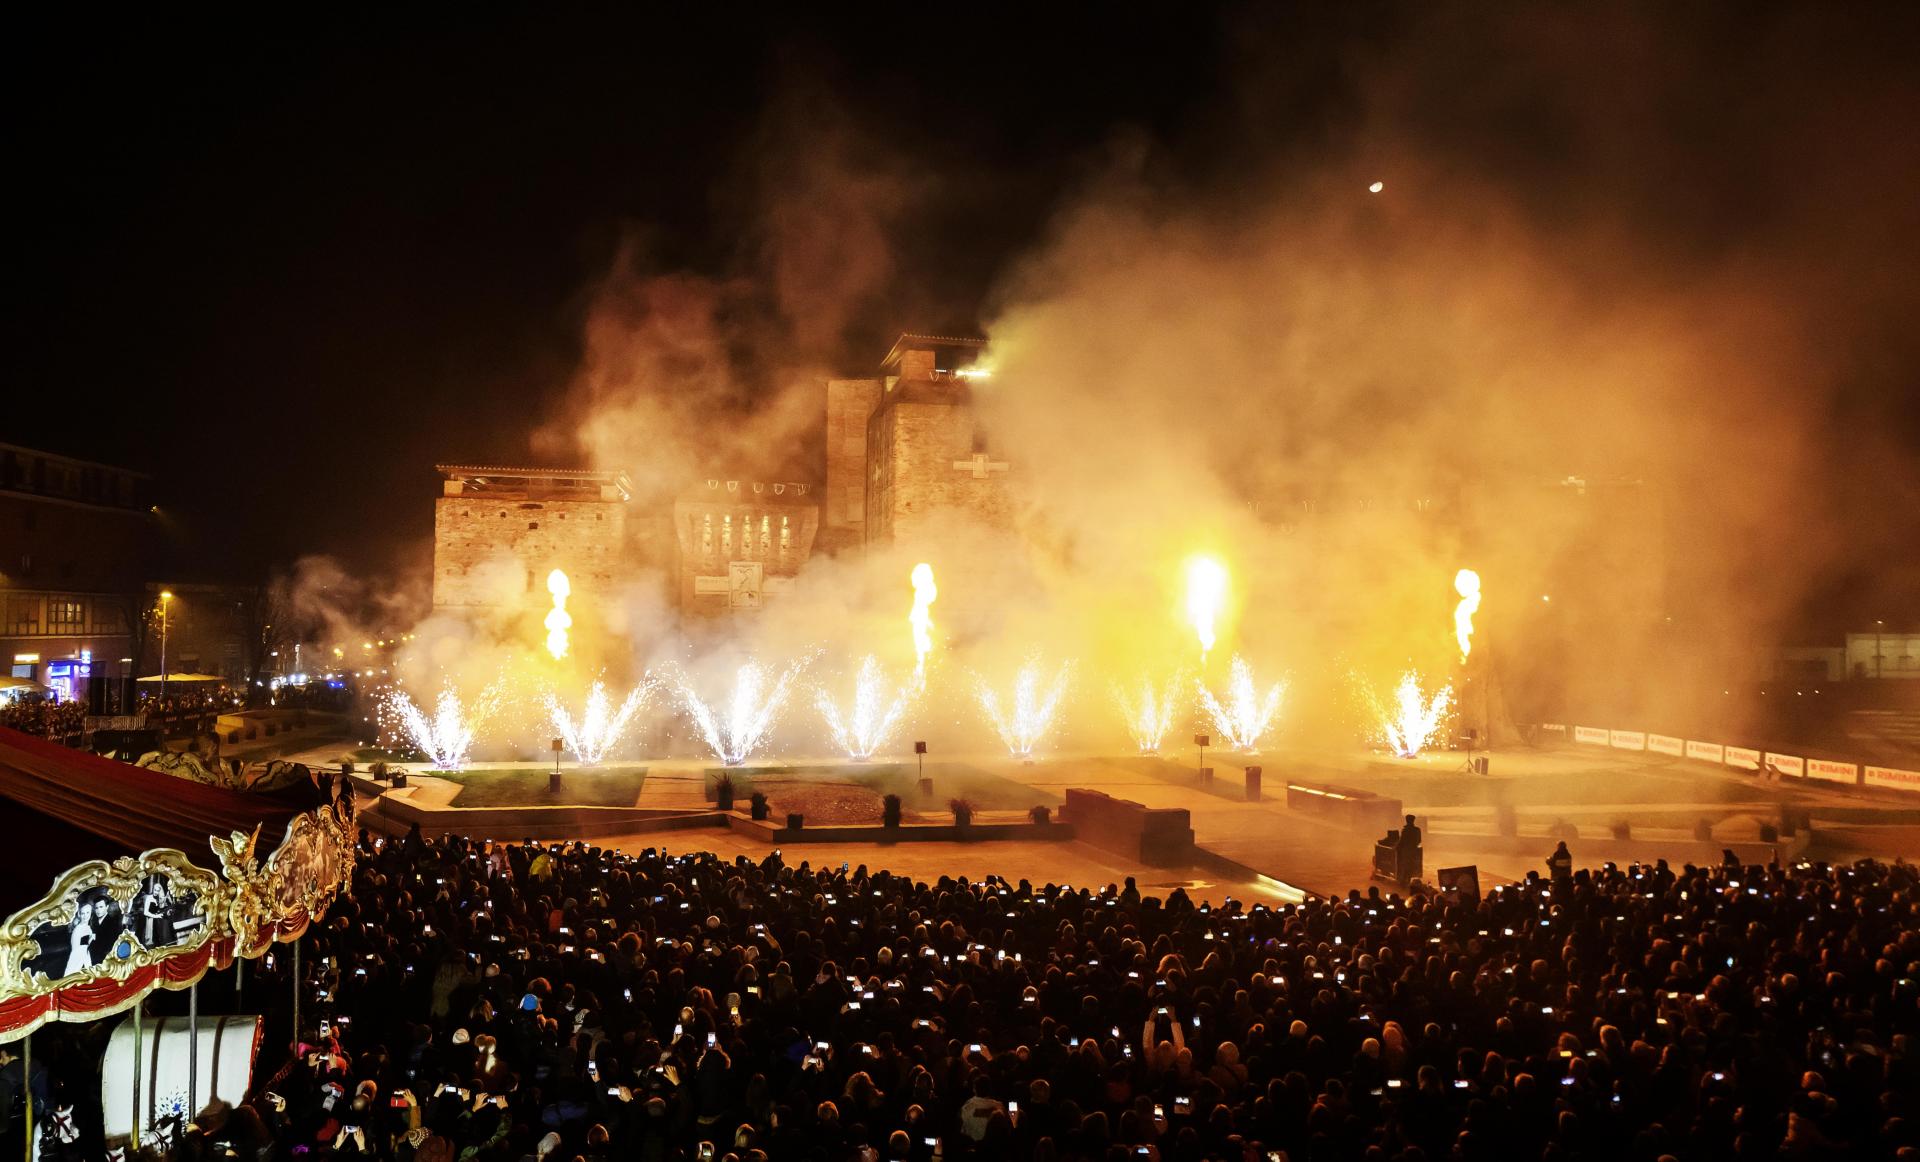 Incendio al Castello Rimini foto di comune di rimini